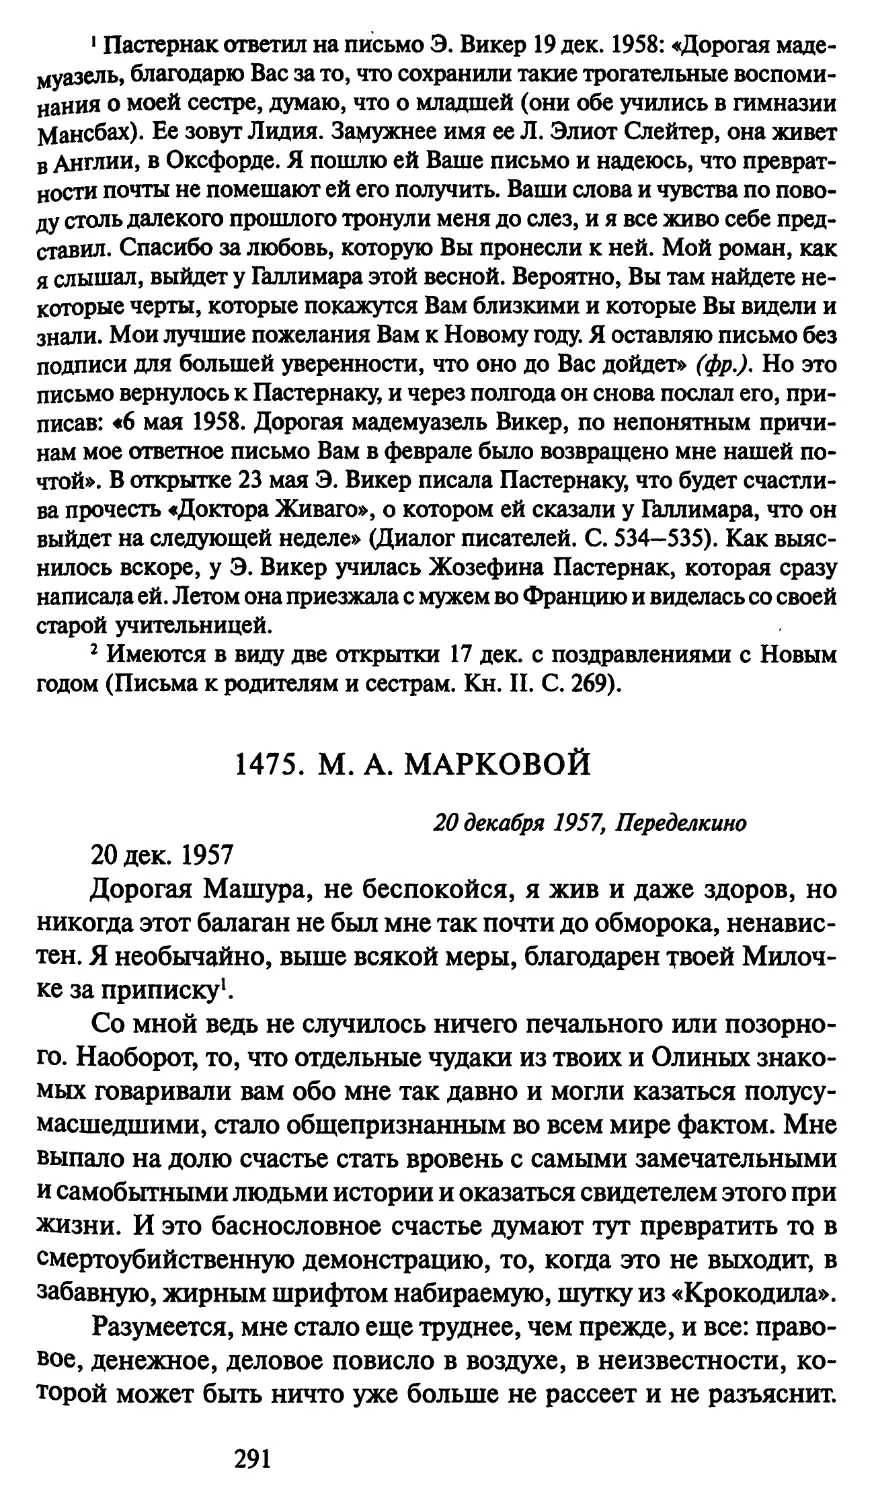 1475. М. А. Марковой 20 декабря 1957